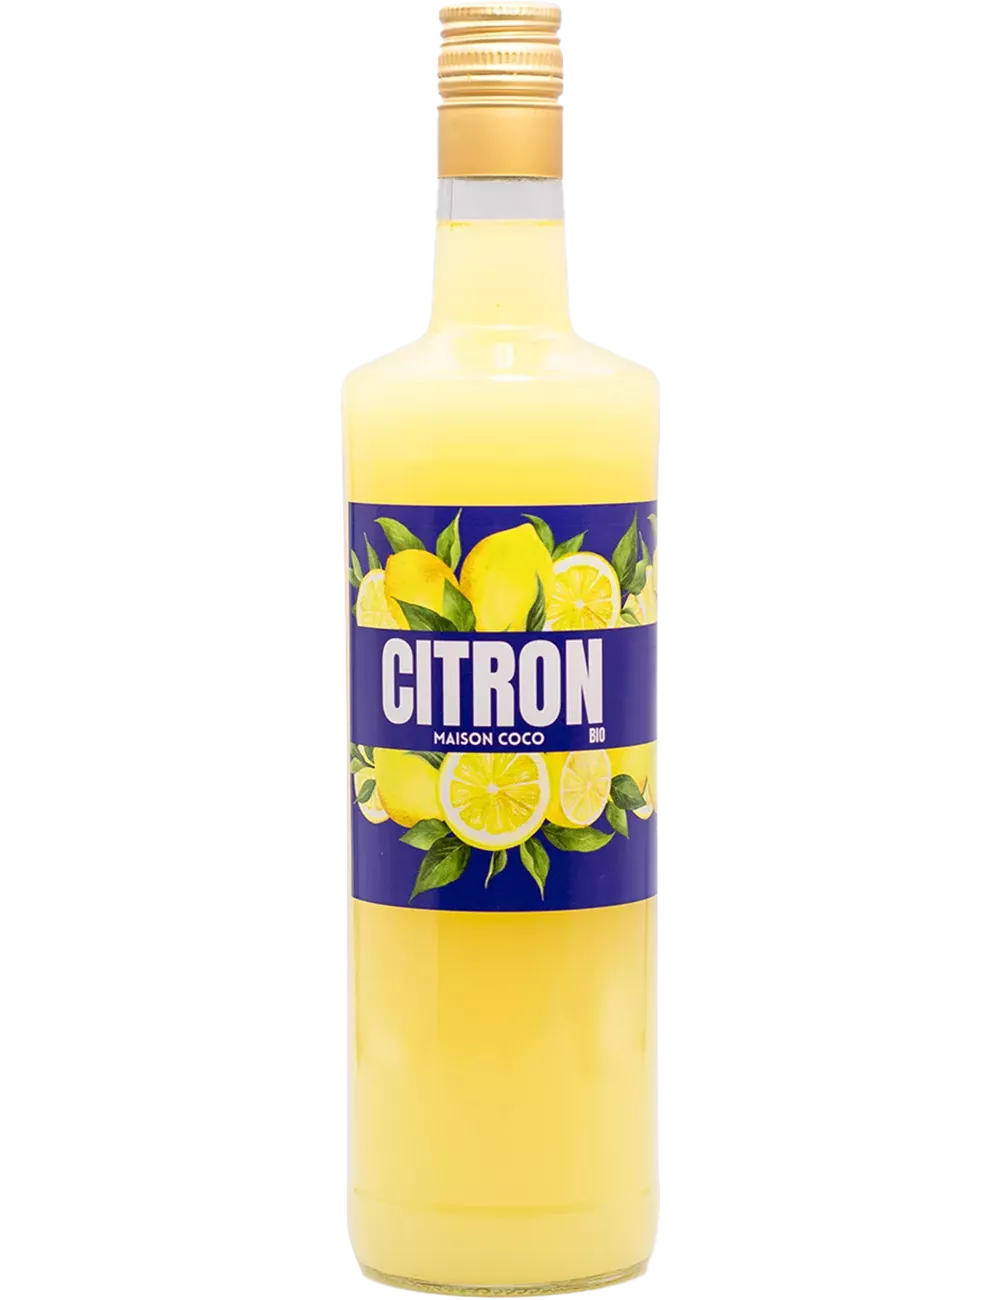 Citron - Maison Coco - Liqueur